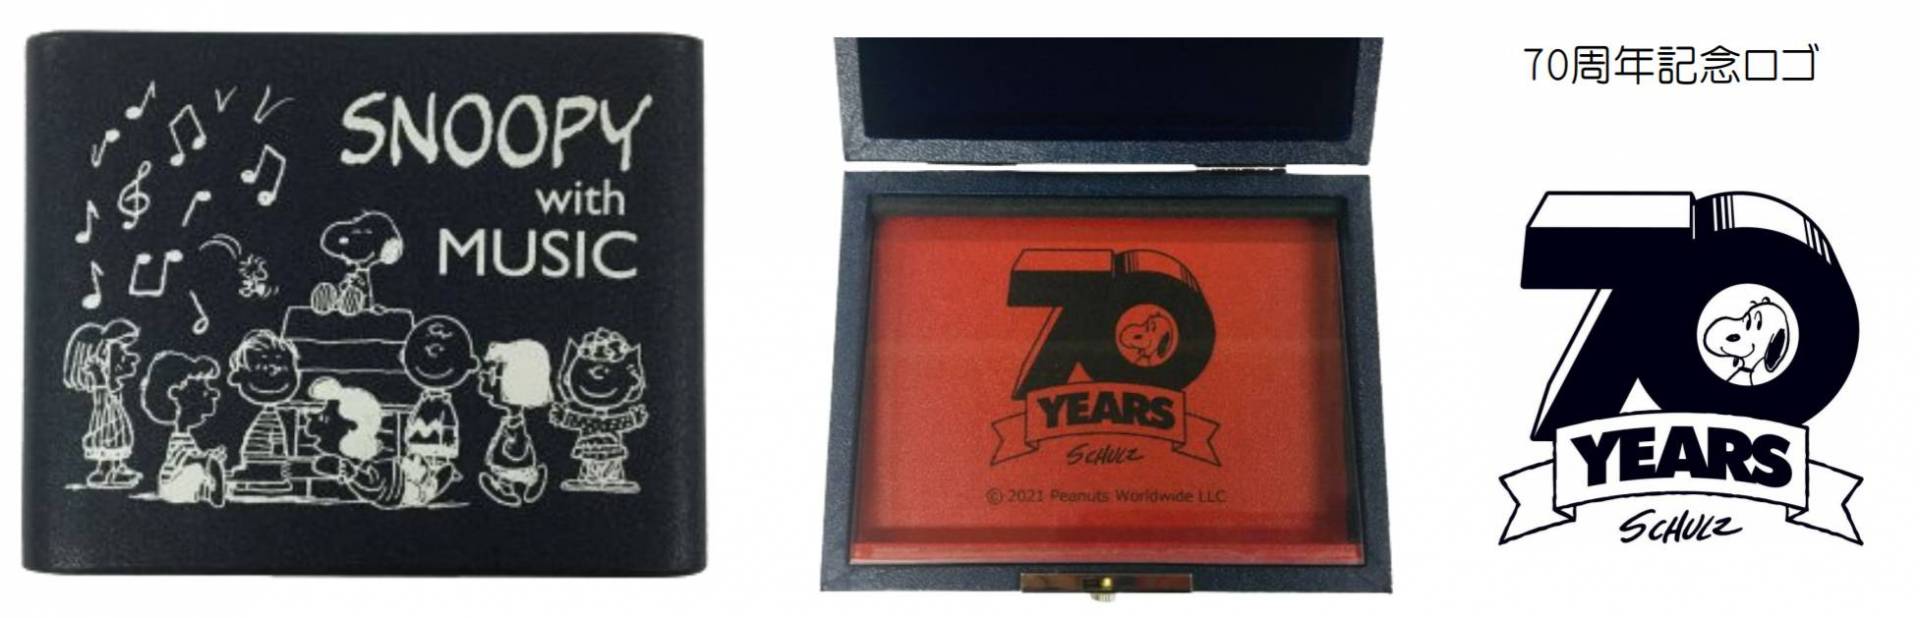 【リードケース限定商品】PEANUTS生誕70周年記念スヌーピーリードケース